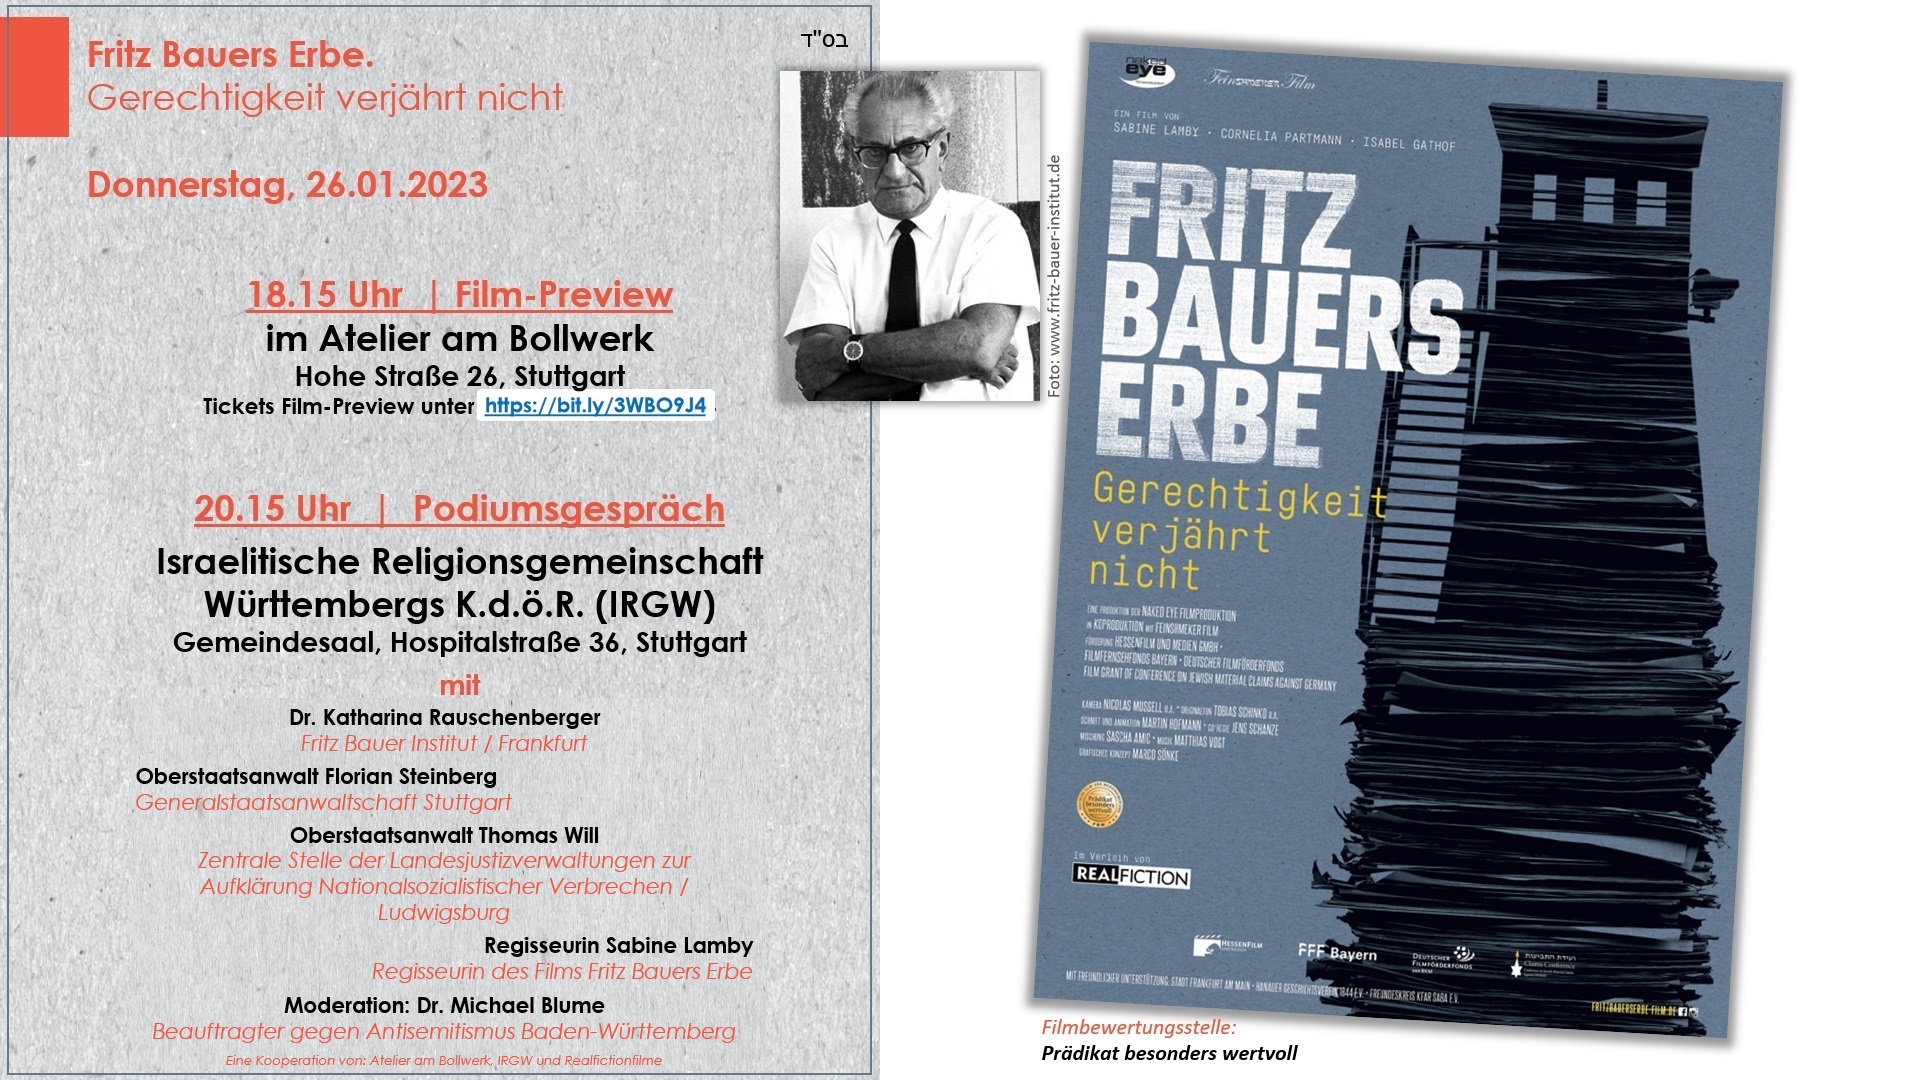 Fritz Bauers Erbe. Gerechtigkeit verjährt nicht - Do, 26.01.2023, 18.15 - Film-Preview & 20.15 - Podiumsgespräch